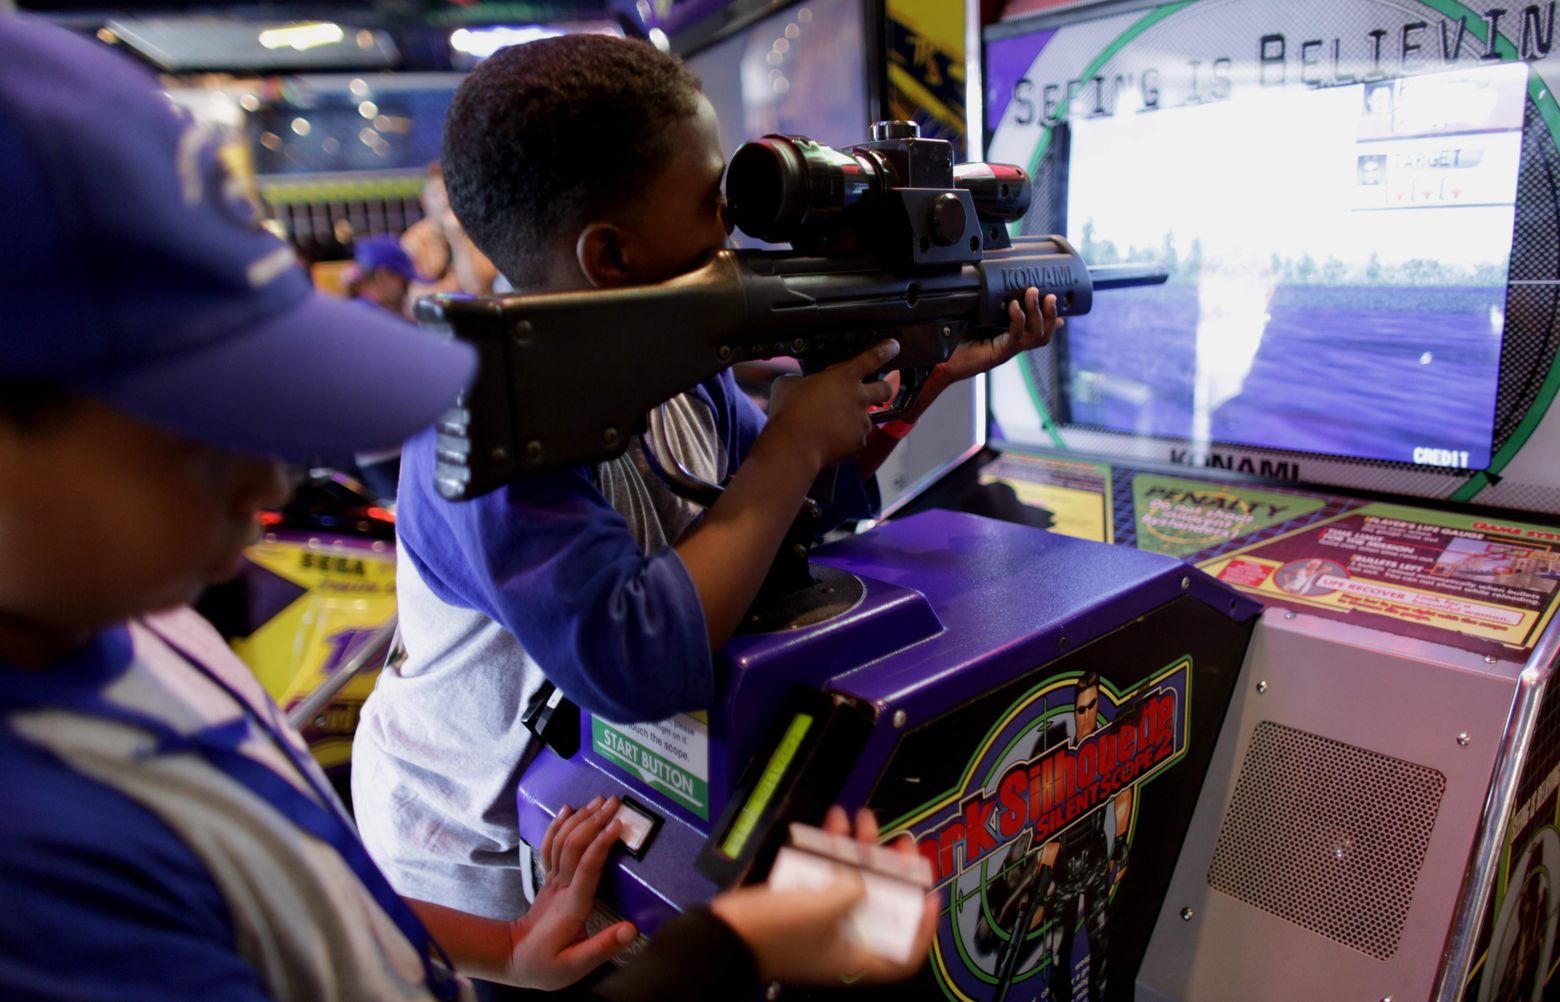 A superexposição de crianças a jogos violentos acaba banalizando a violência, sendo muito prejudicial -- mas isso vale também para outras mídias.